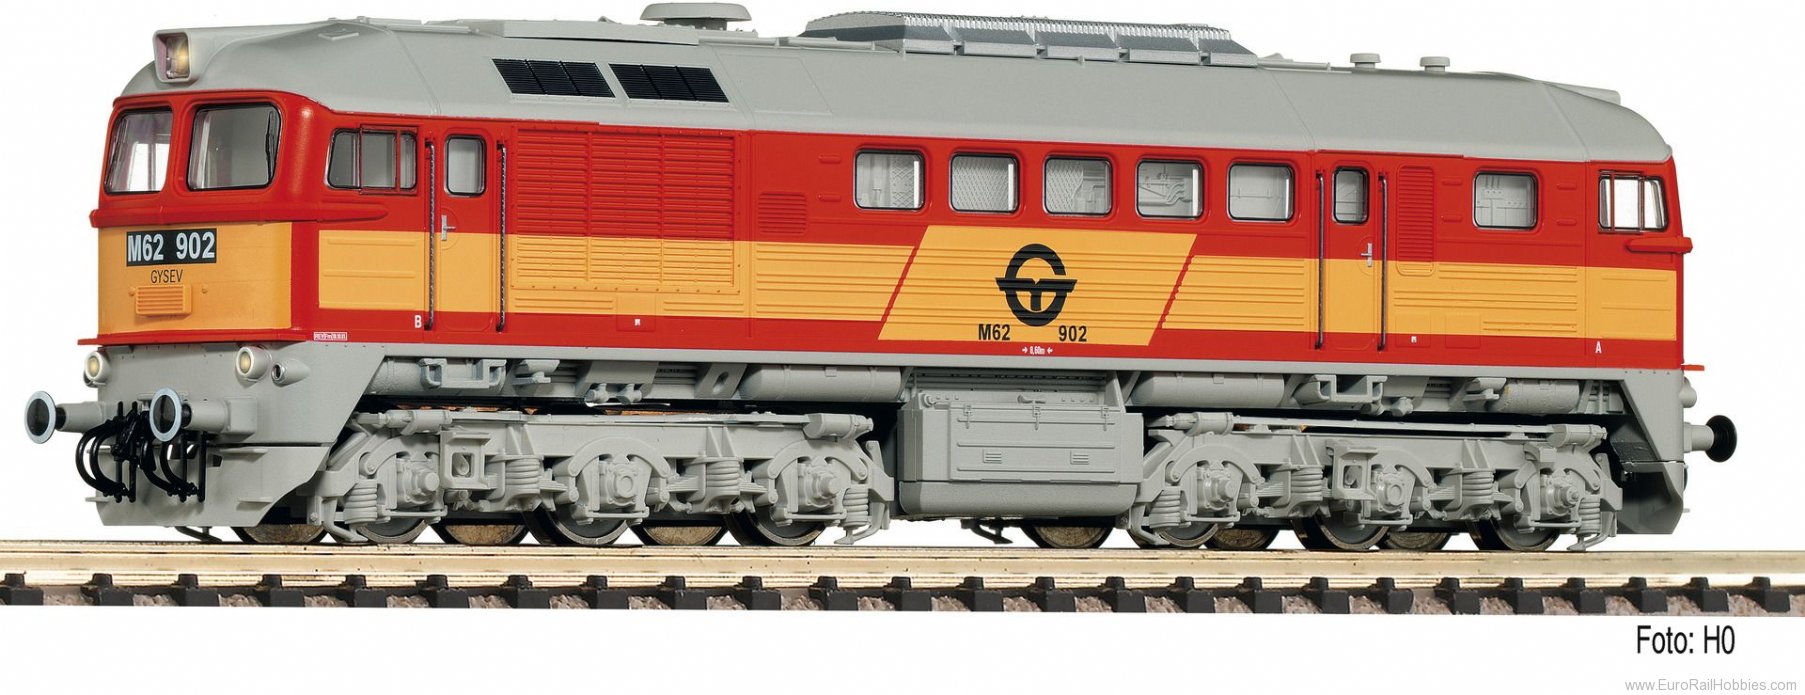 Fleischmann 725291 Gysev Diesel locomotive M62 902 (Digital Soun